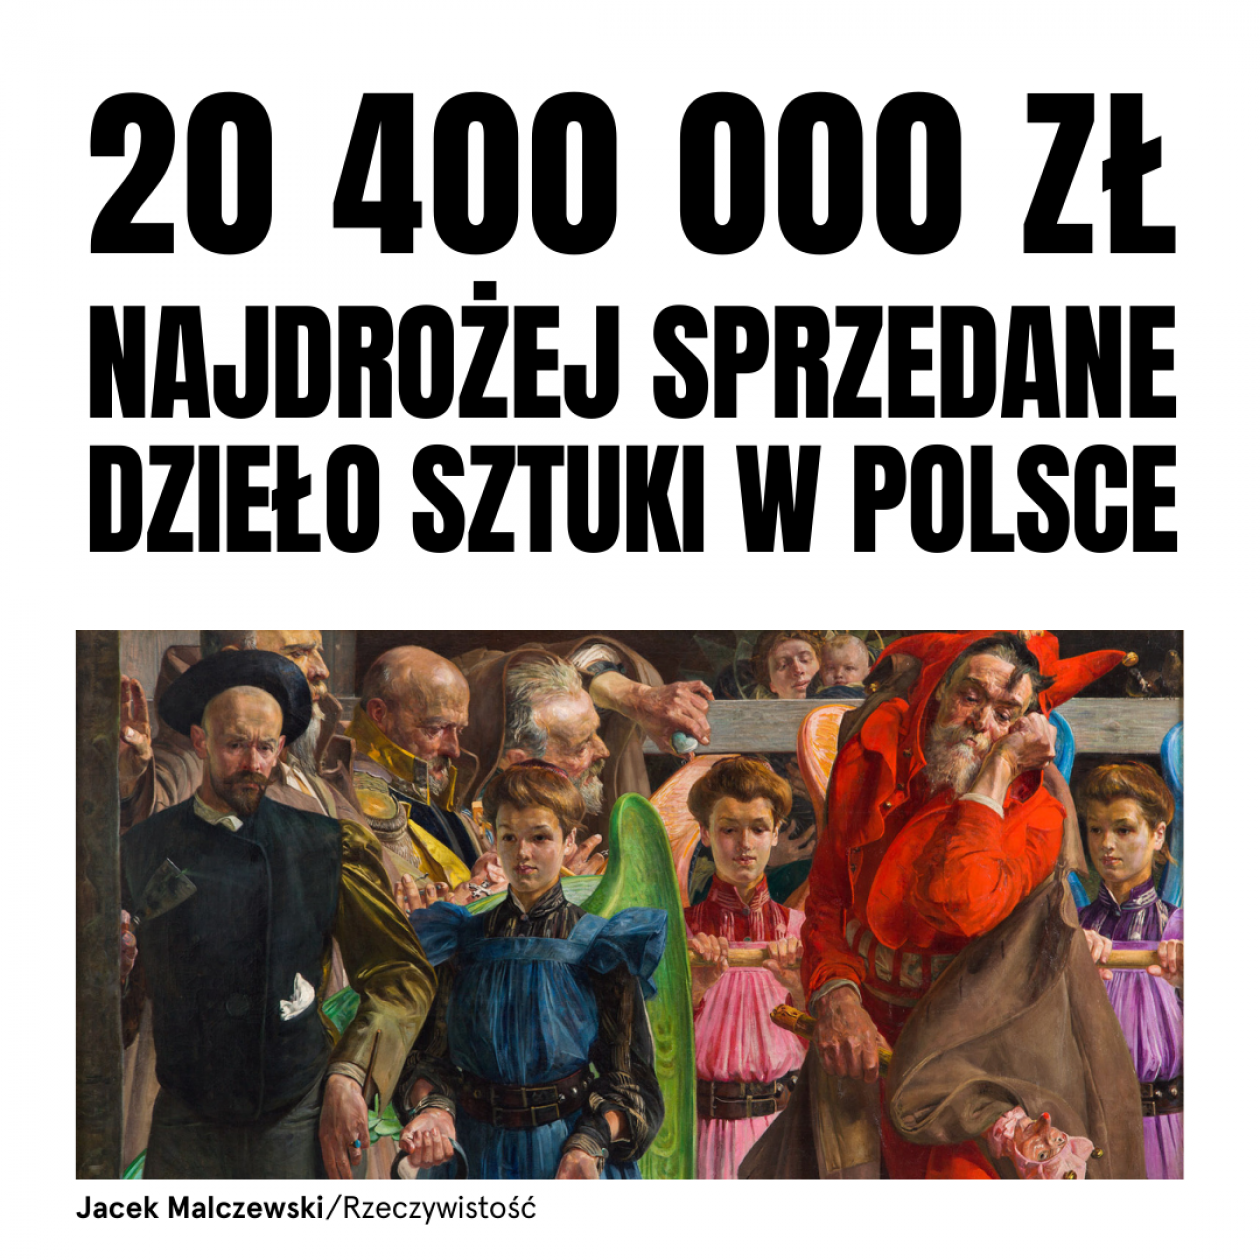 Obraz Malczewskiego najdrożej sprzedanym dziełem sztuki w Polsce